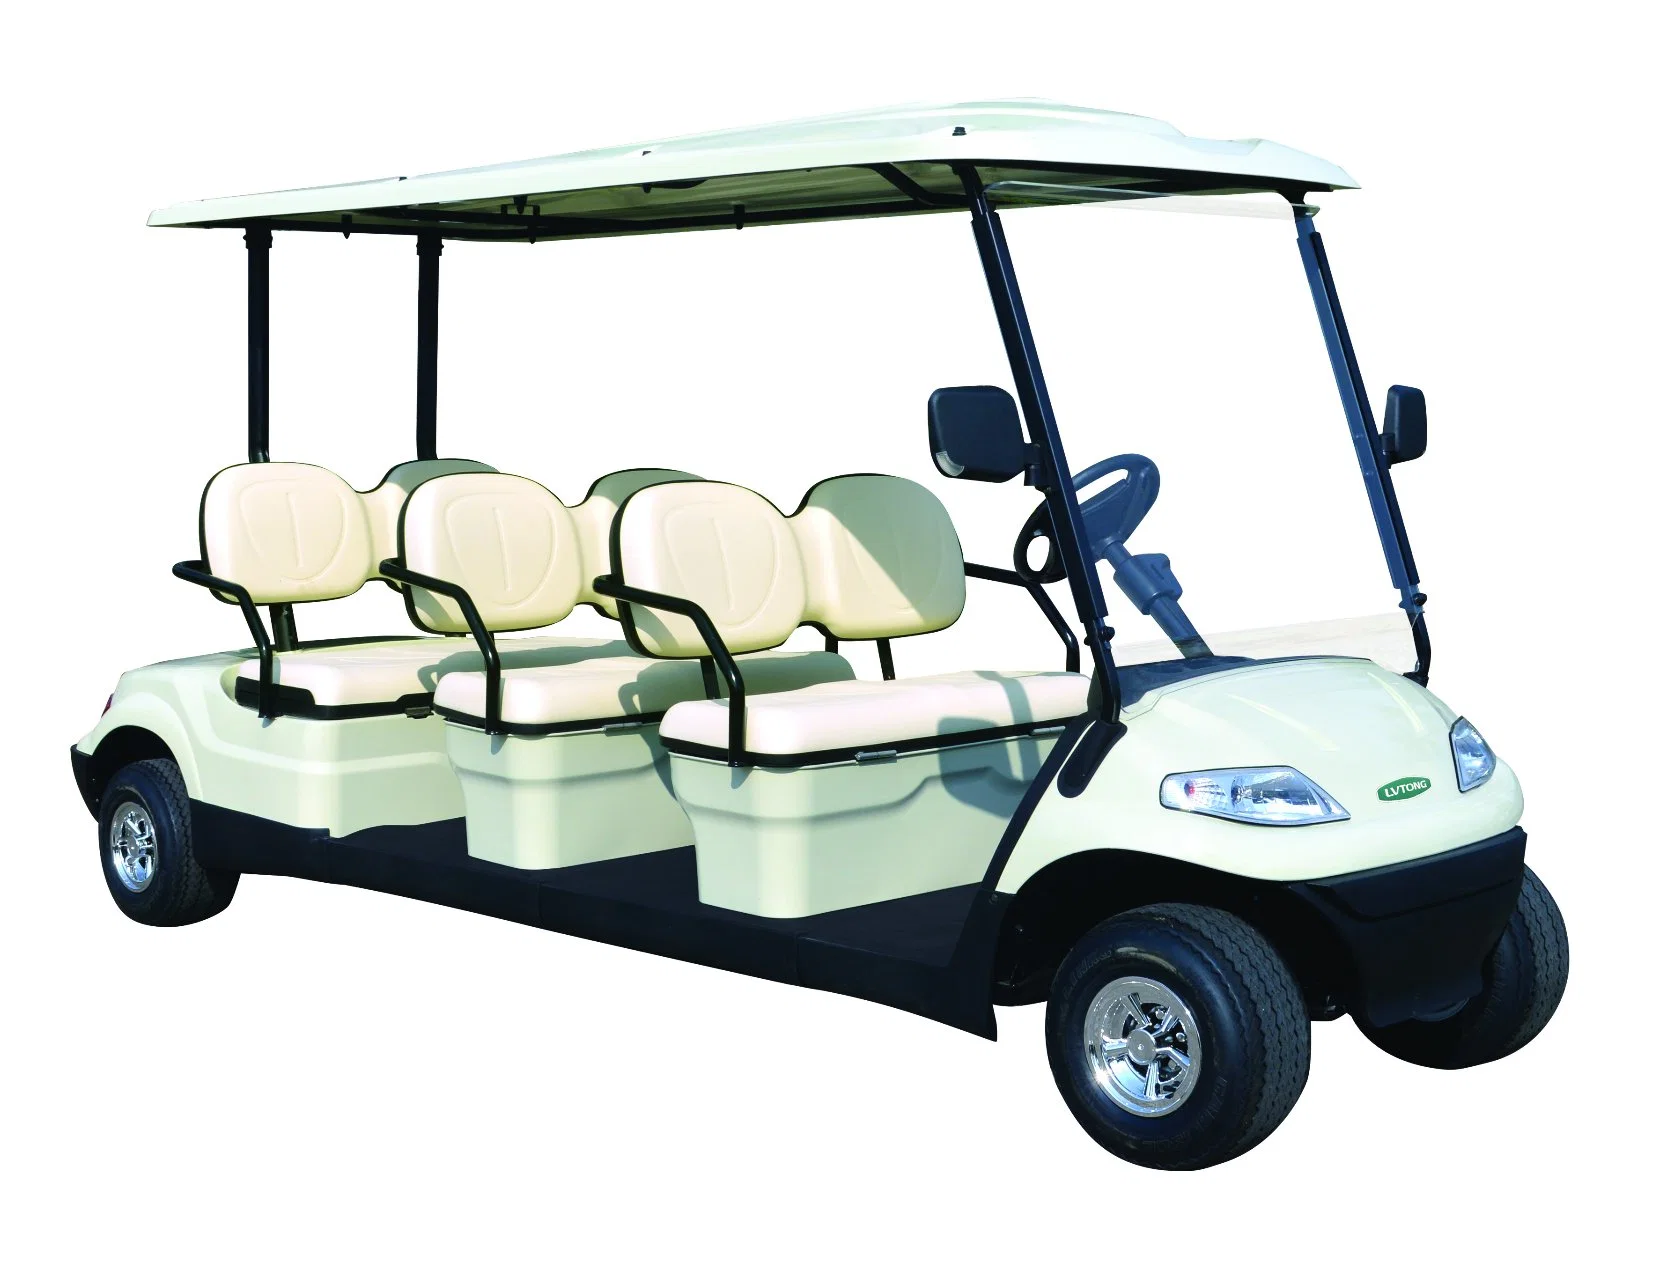 Venda 6 Lugares a Visitar Eléctrico autocarro eléctrico carrinho de golfe Aluguer (Lt-UM627.6)